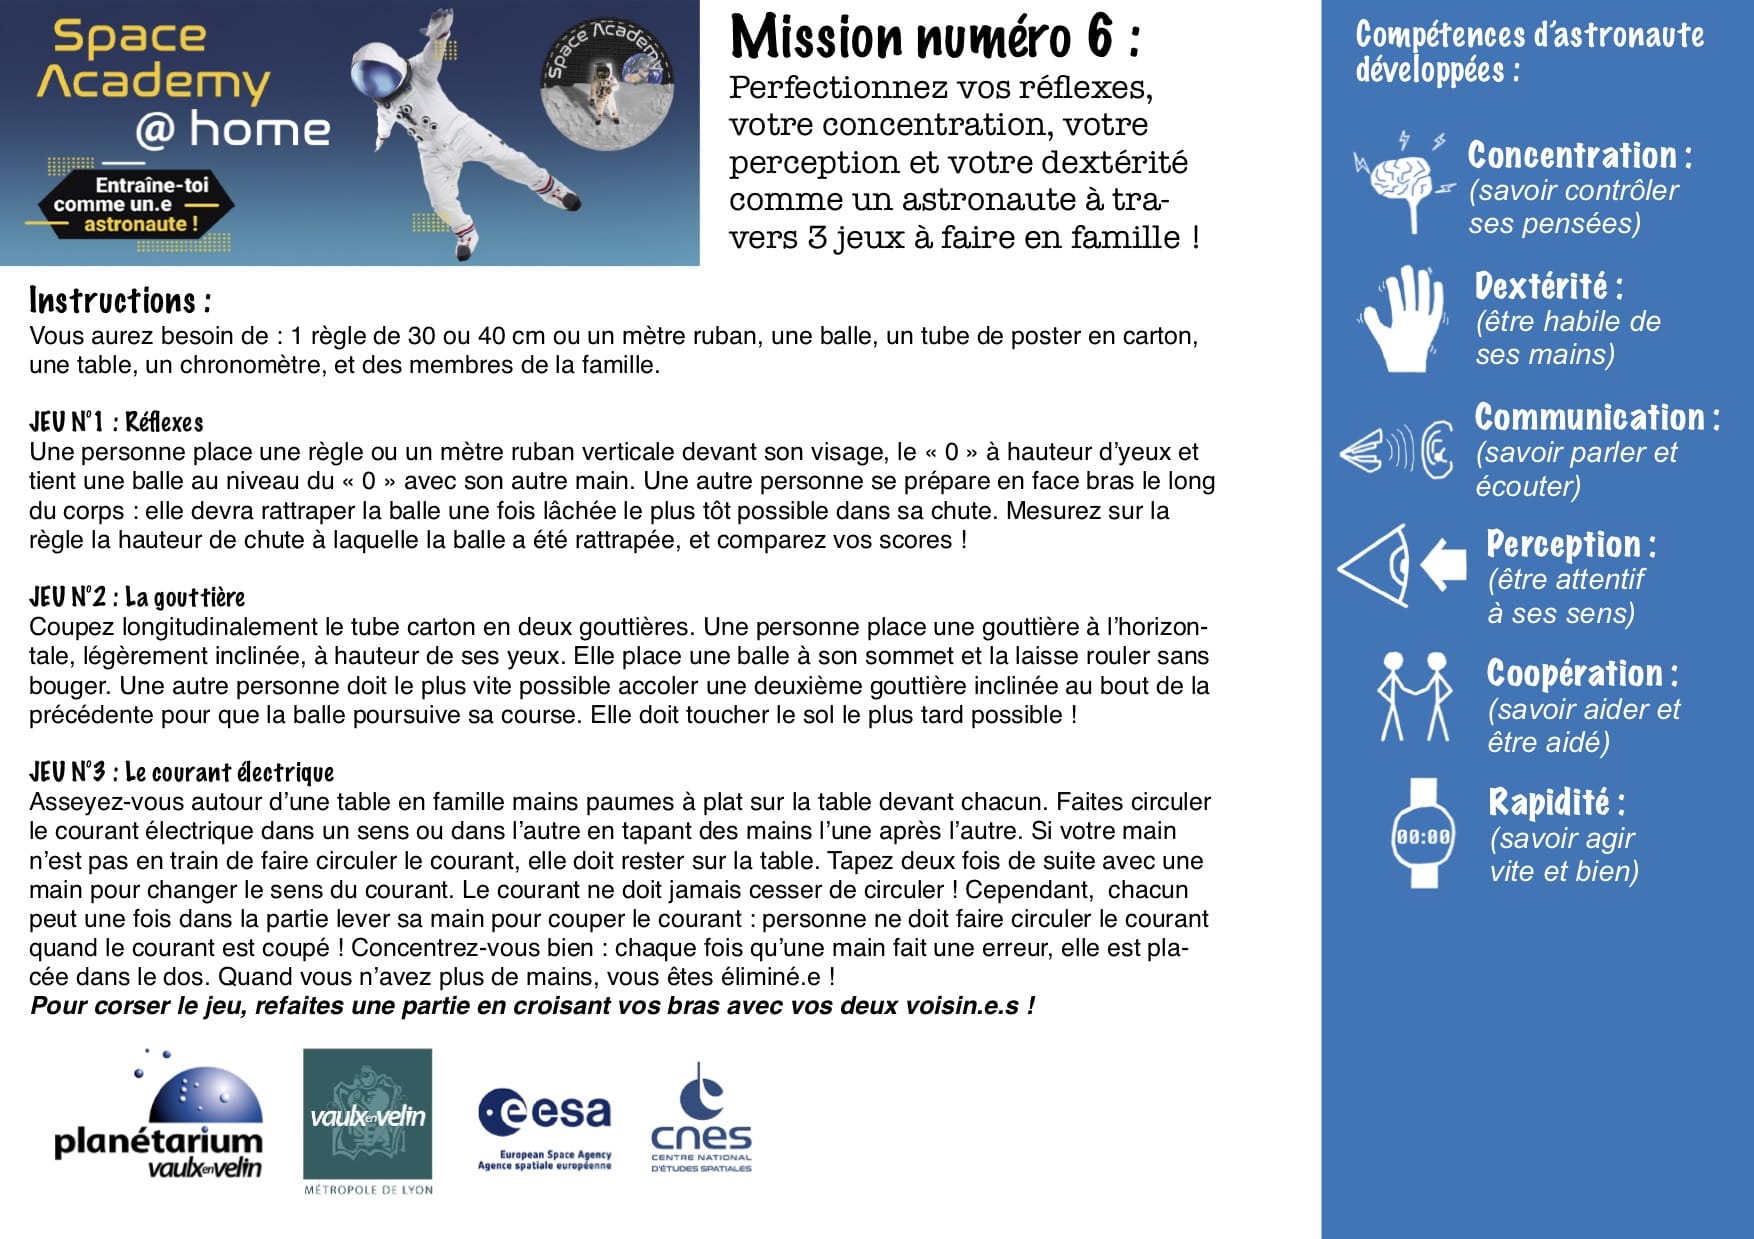 Missions du Planétarium 6 à 10